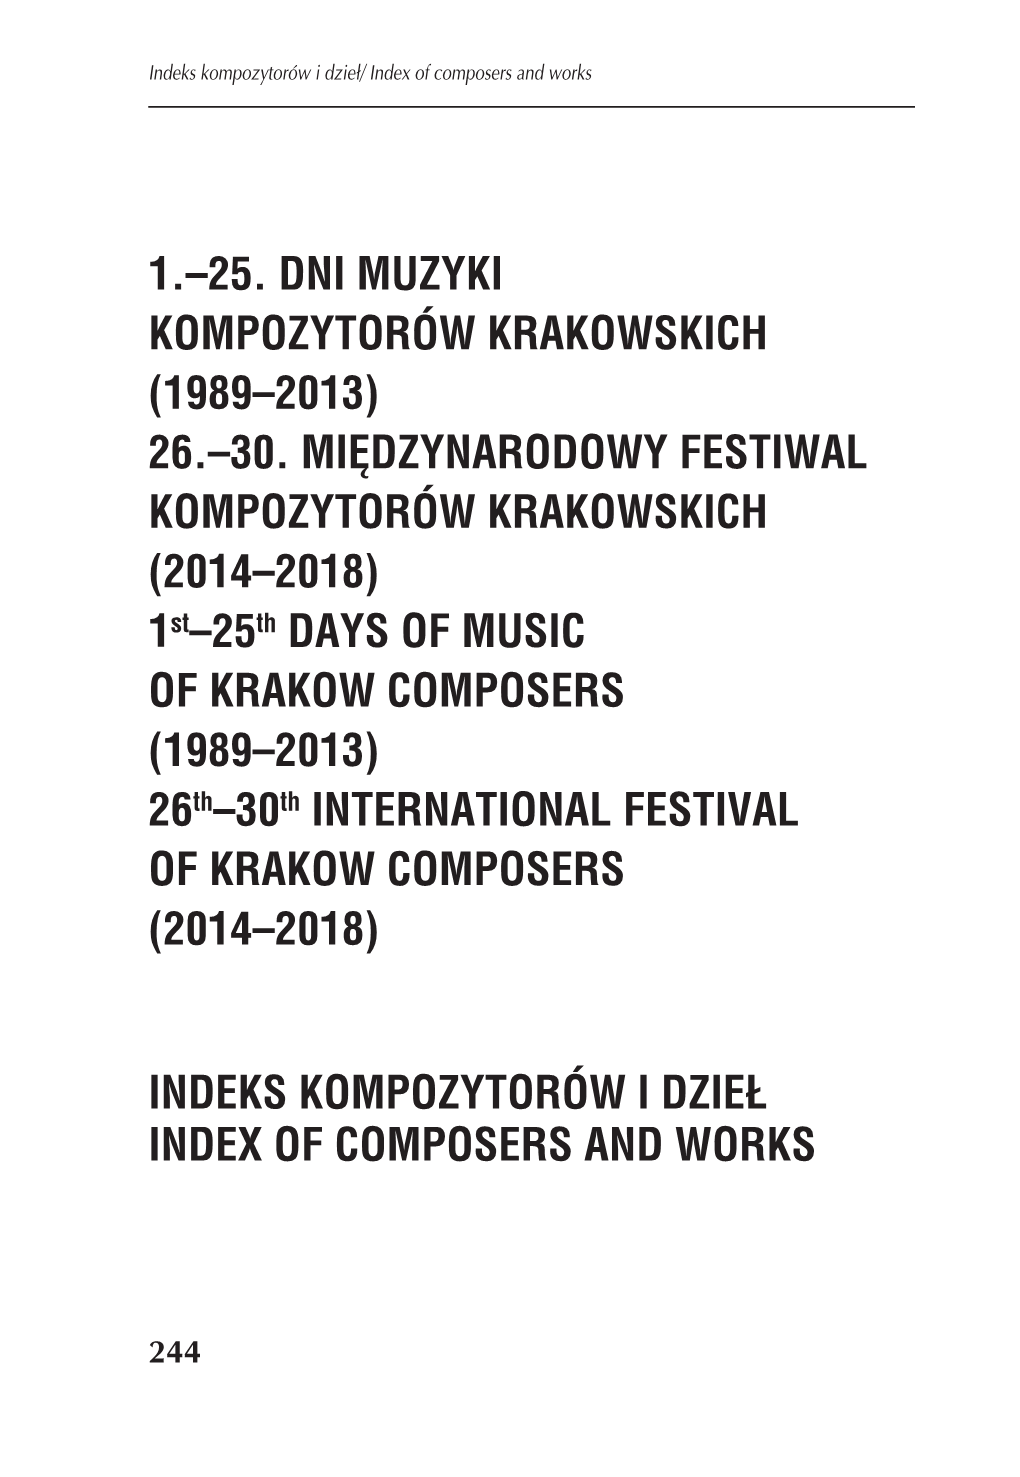 Indeks Kompozytorów 1989-2018